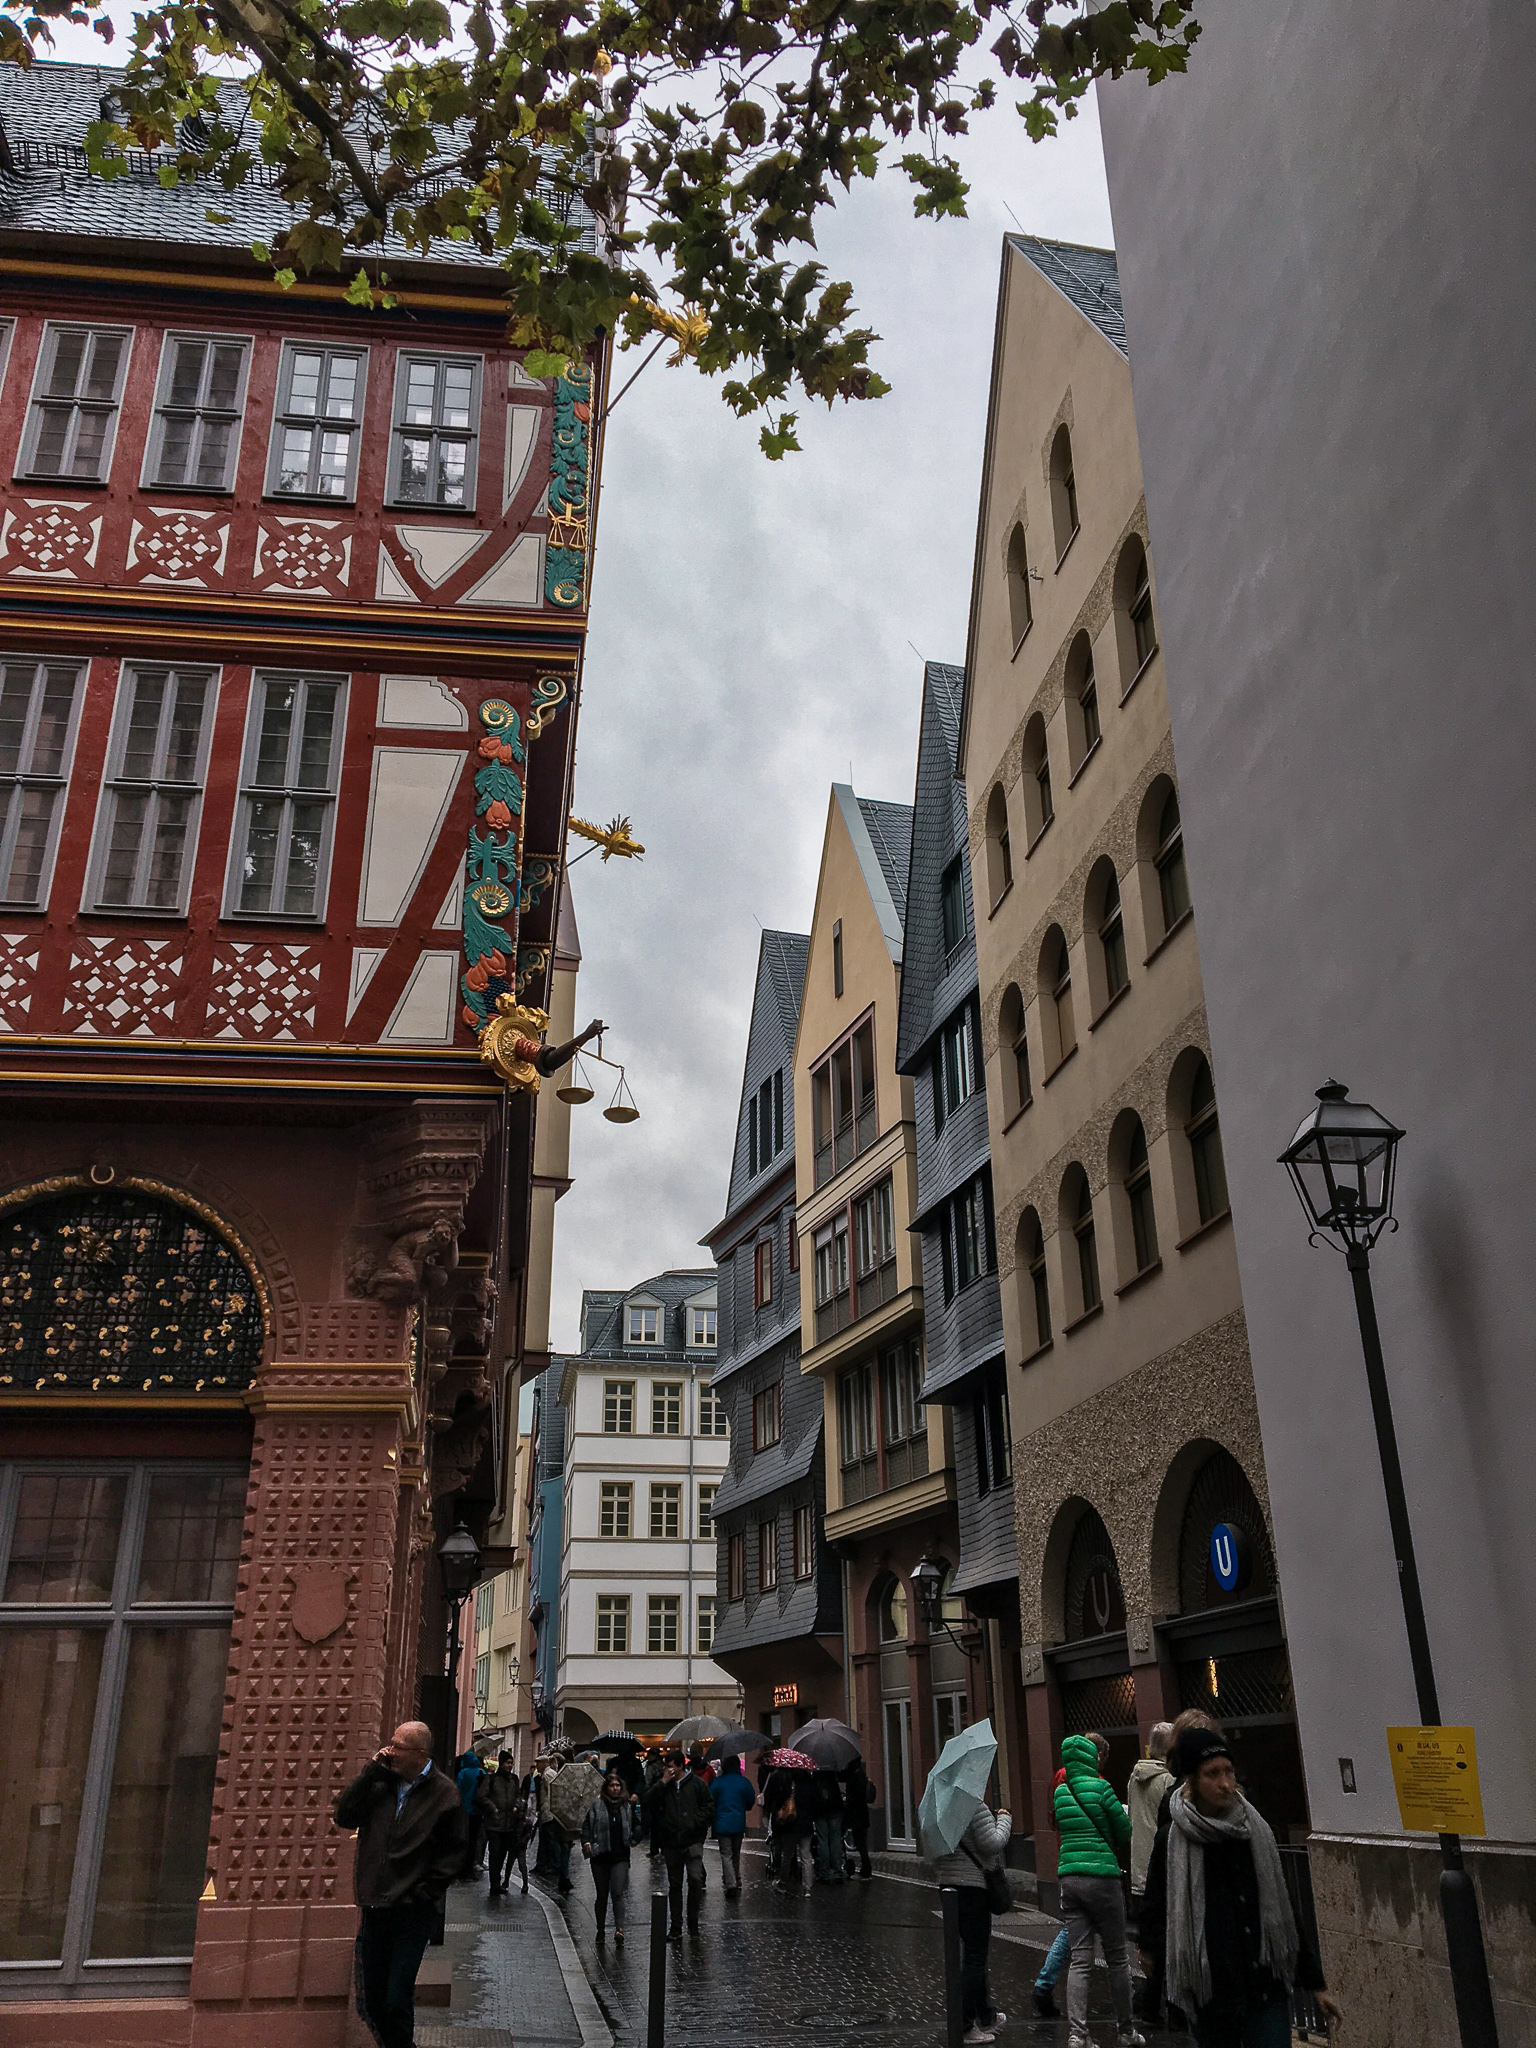 Romerberg Frankfurt, Germany's New Old Town